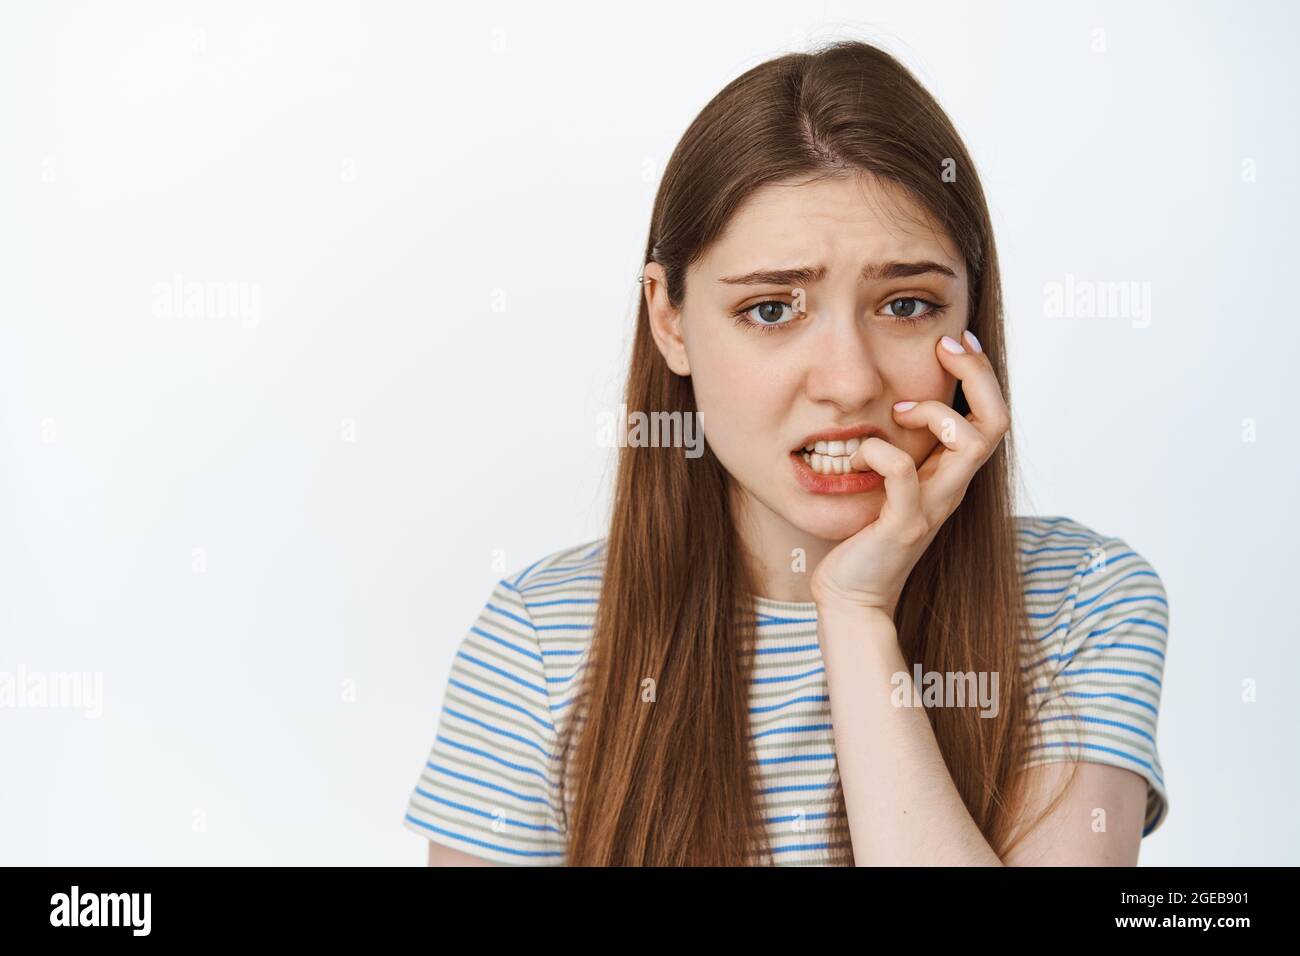 Ritratto di una ragazza spaventata che le mordicchiava il dito, guardando ansioso e preoccupato per la macchina fotografica, in piedi in t-shirt su sfondo bianco Foto Stock